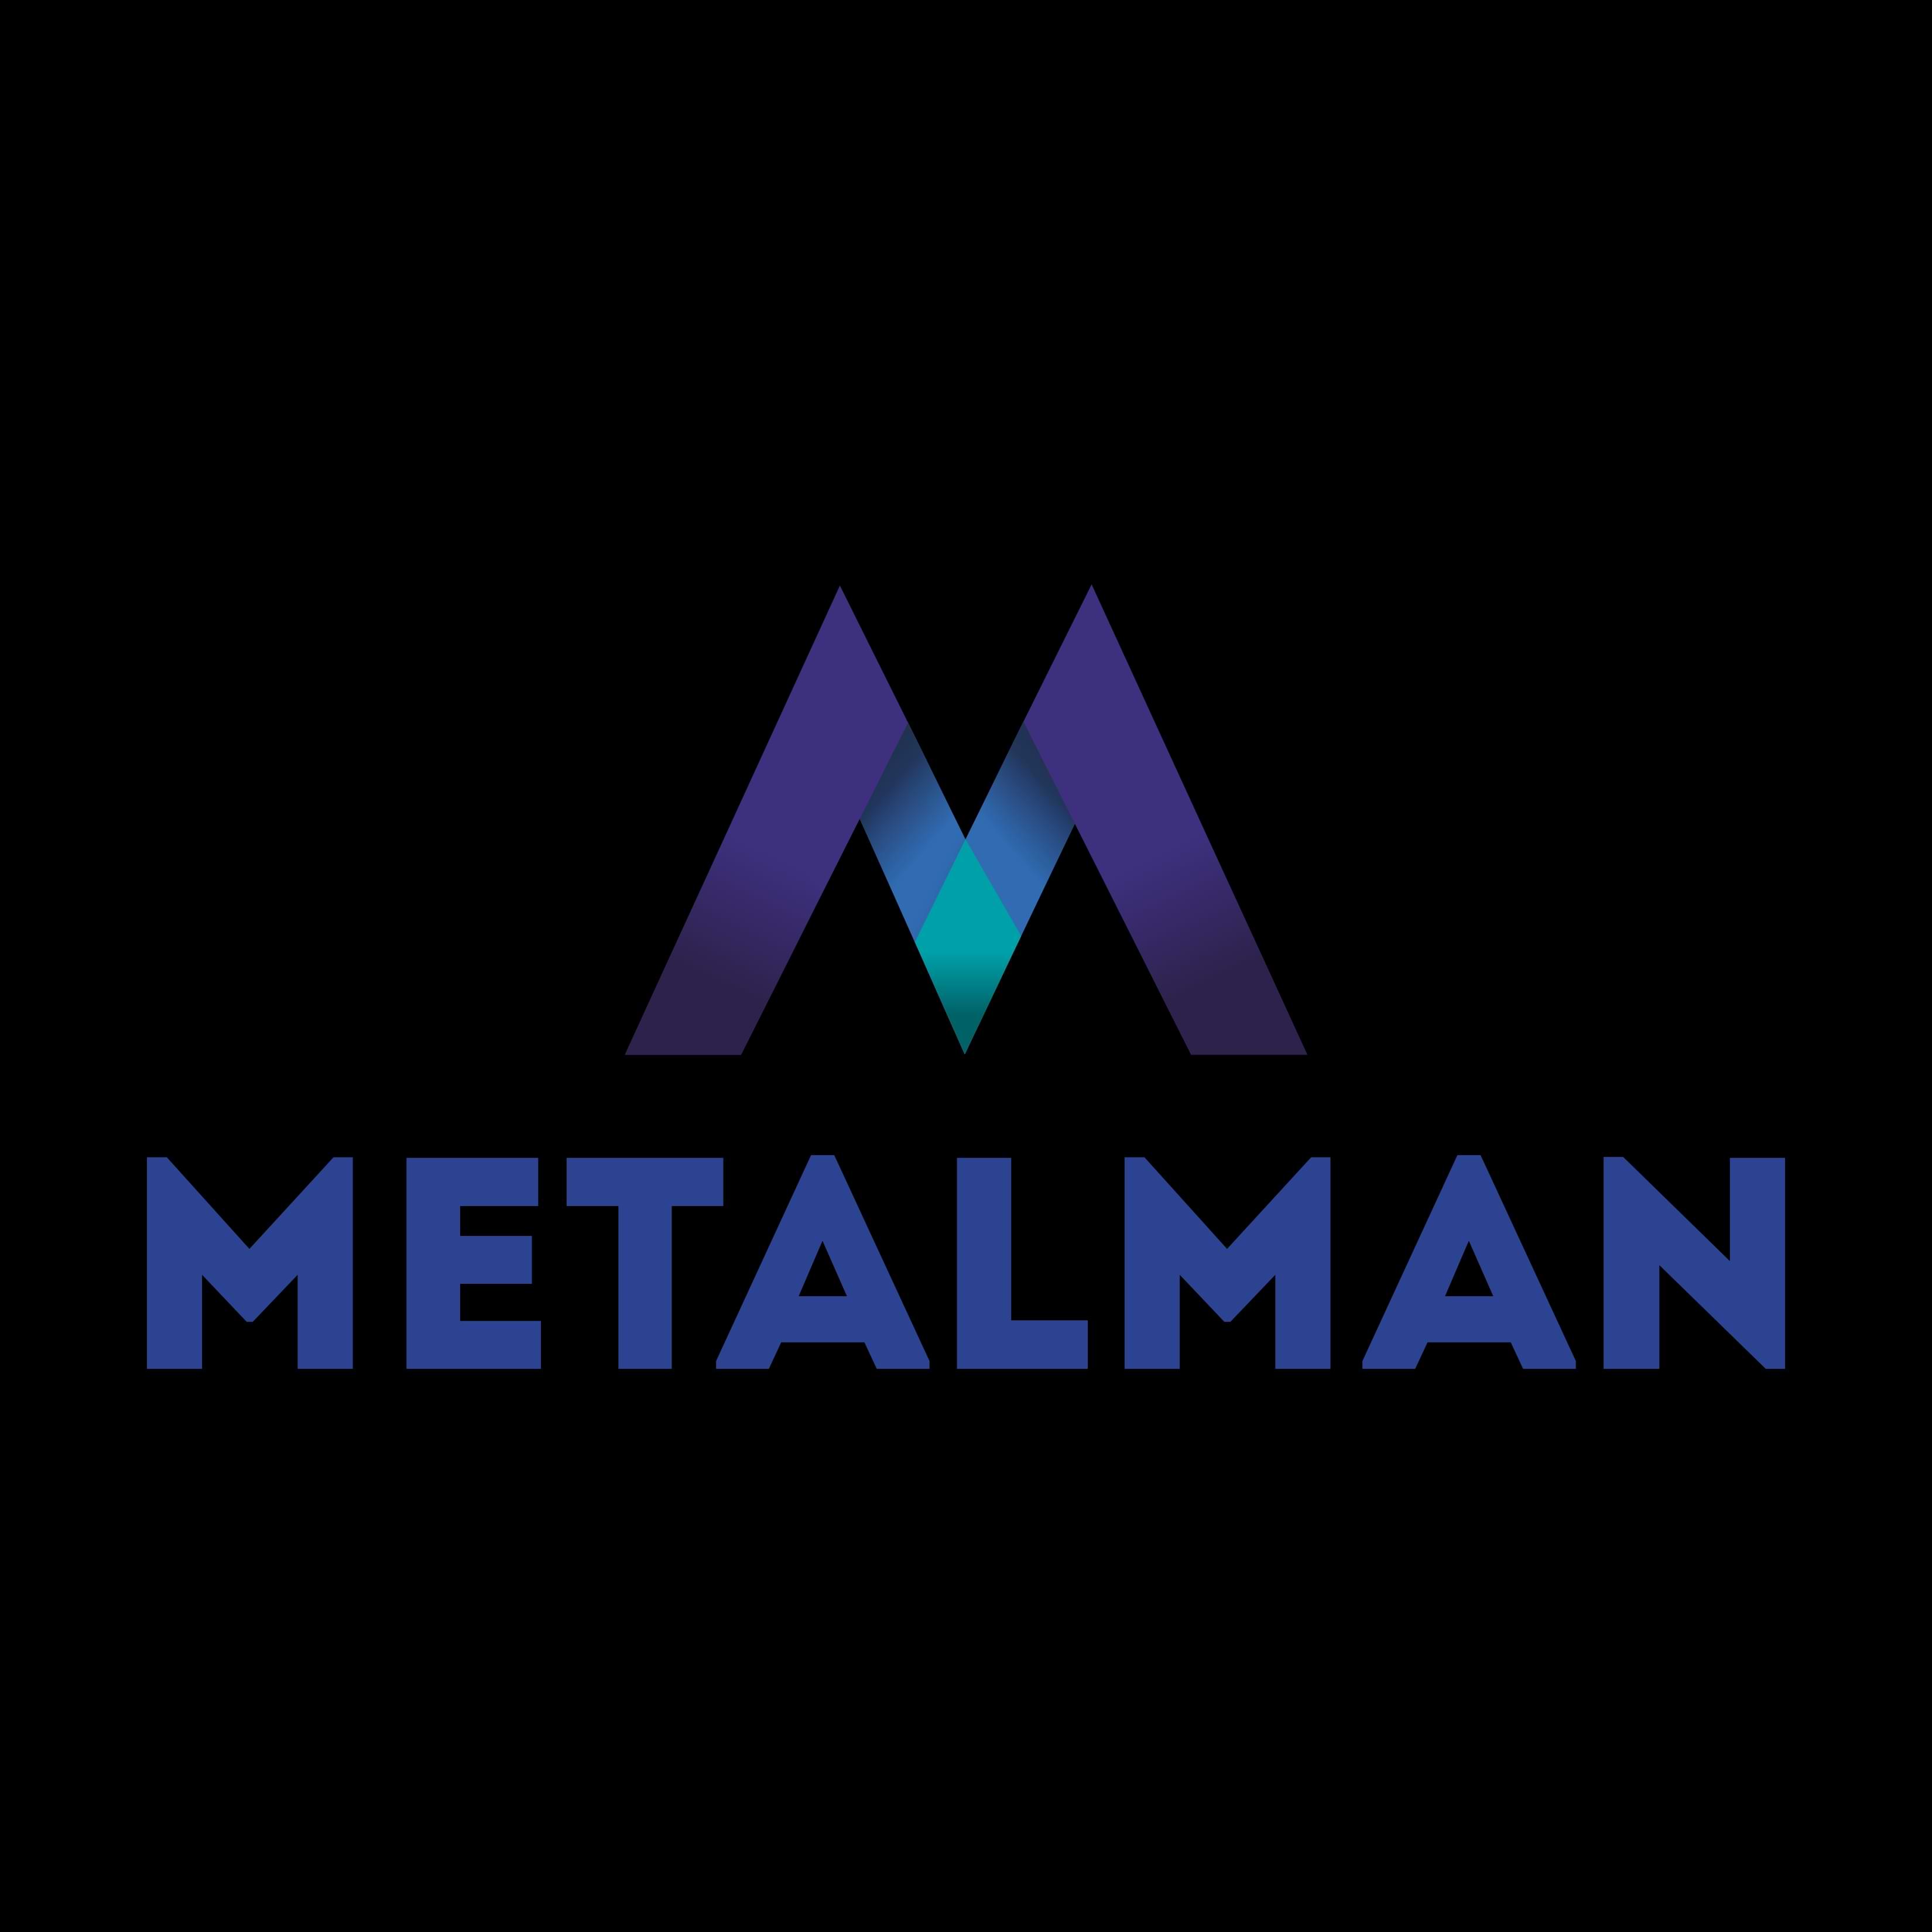 MetalMan